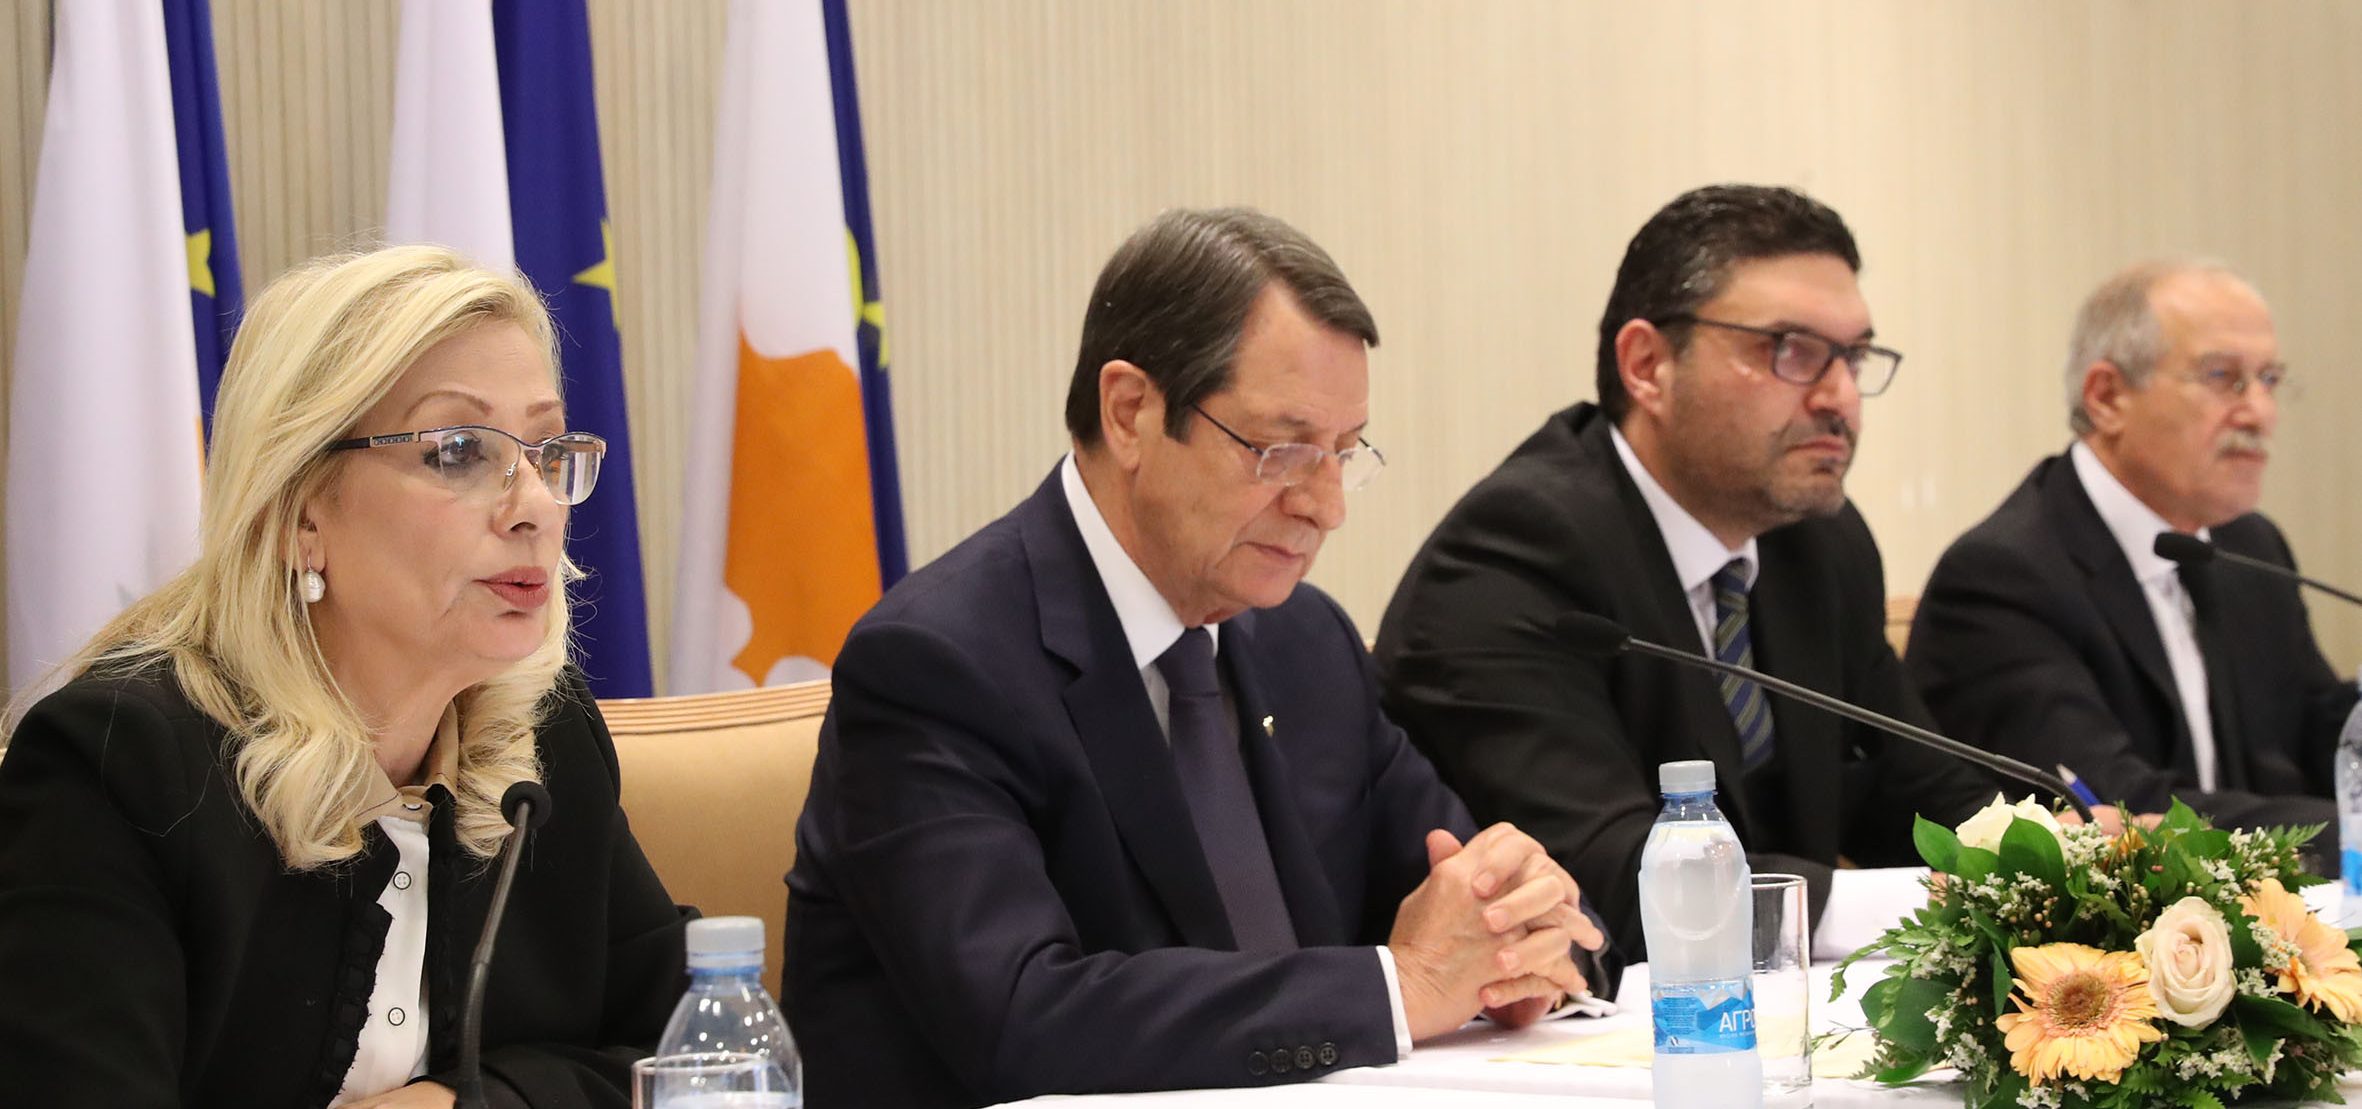 Προεδρικό Μέγαρο, Λευκωσία, Κύπρος 
Δηλώσεις μετά το πέρας του Υπουργικού Συμβουλίου.
//
Presidential Palace, Lefkosia, Cyprus 
Remarks to the Media after the meeting of the Council of Ministers.